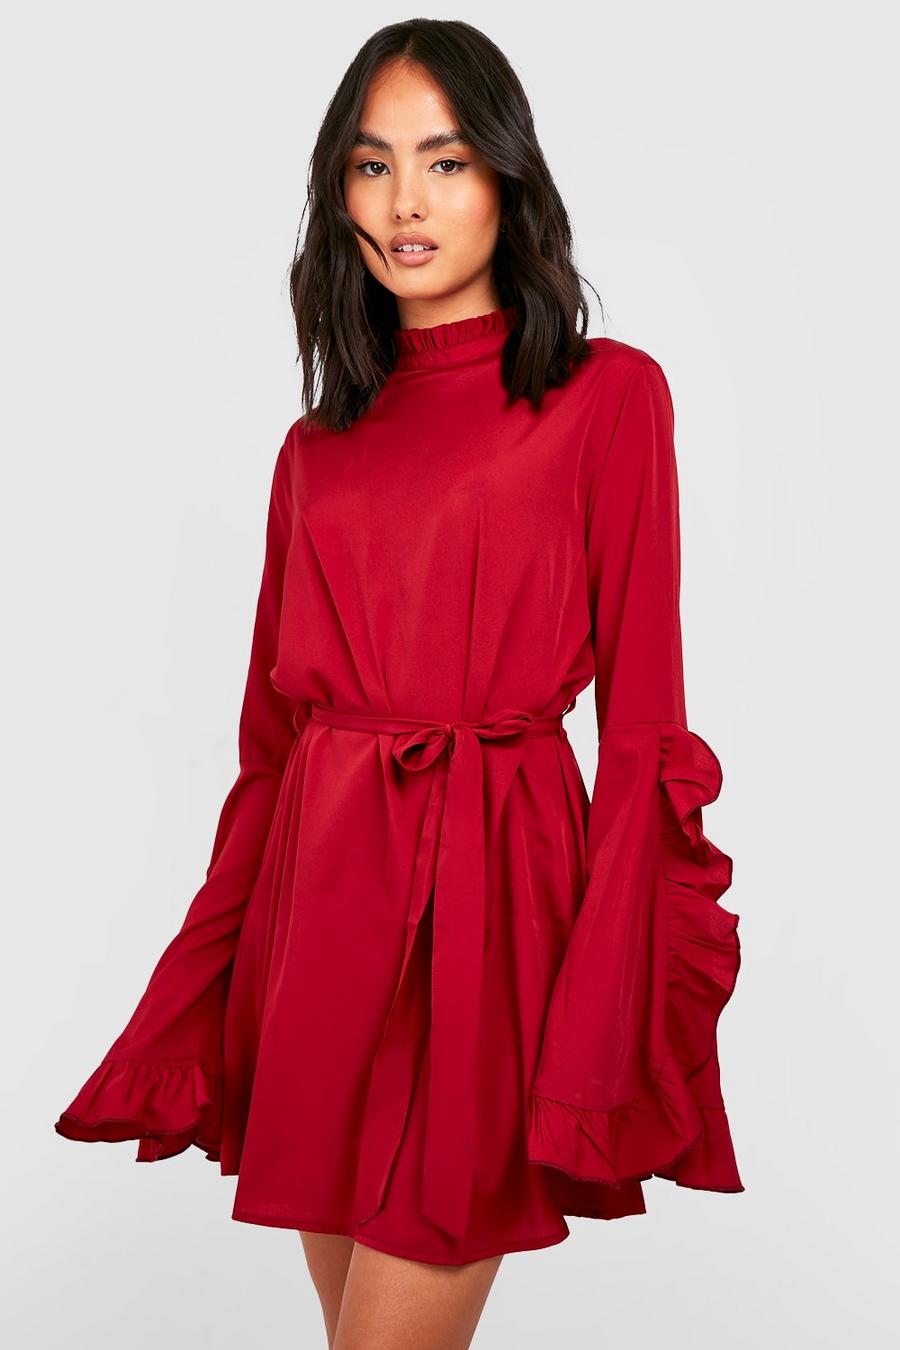 Berry röd Skiftklänning med hög krage och vid ärm